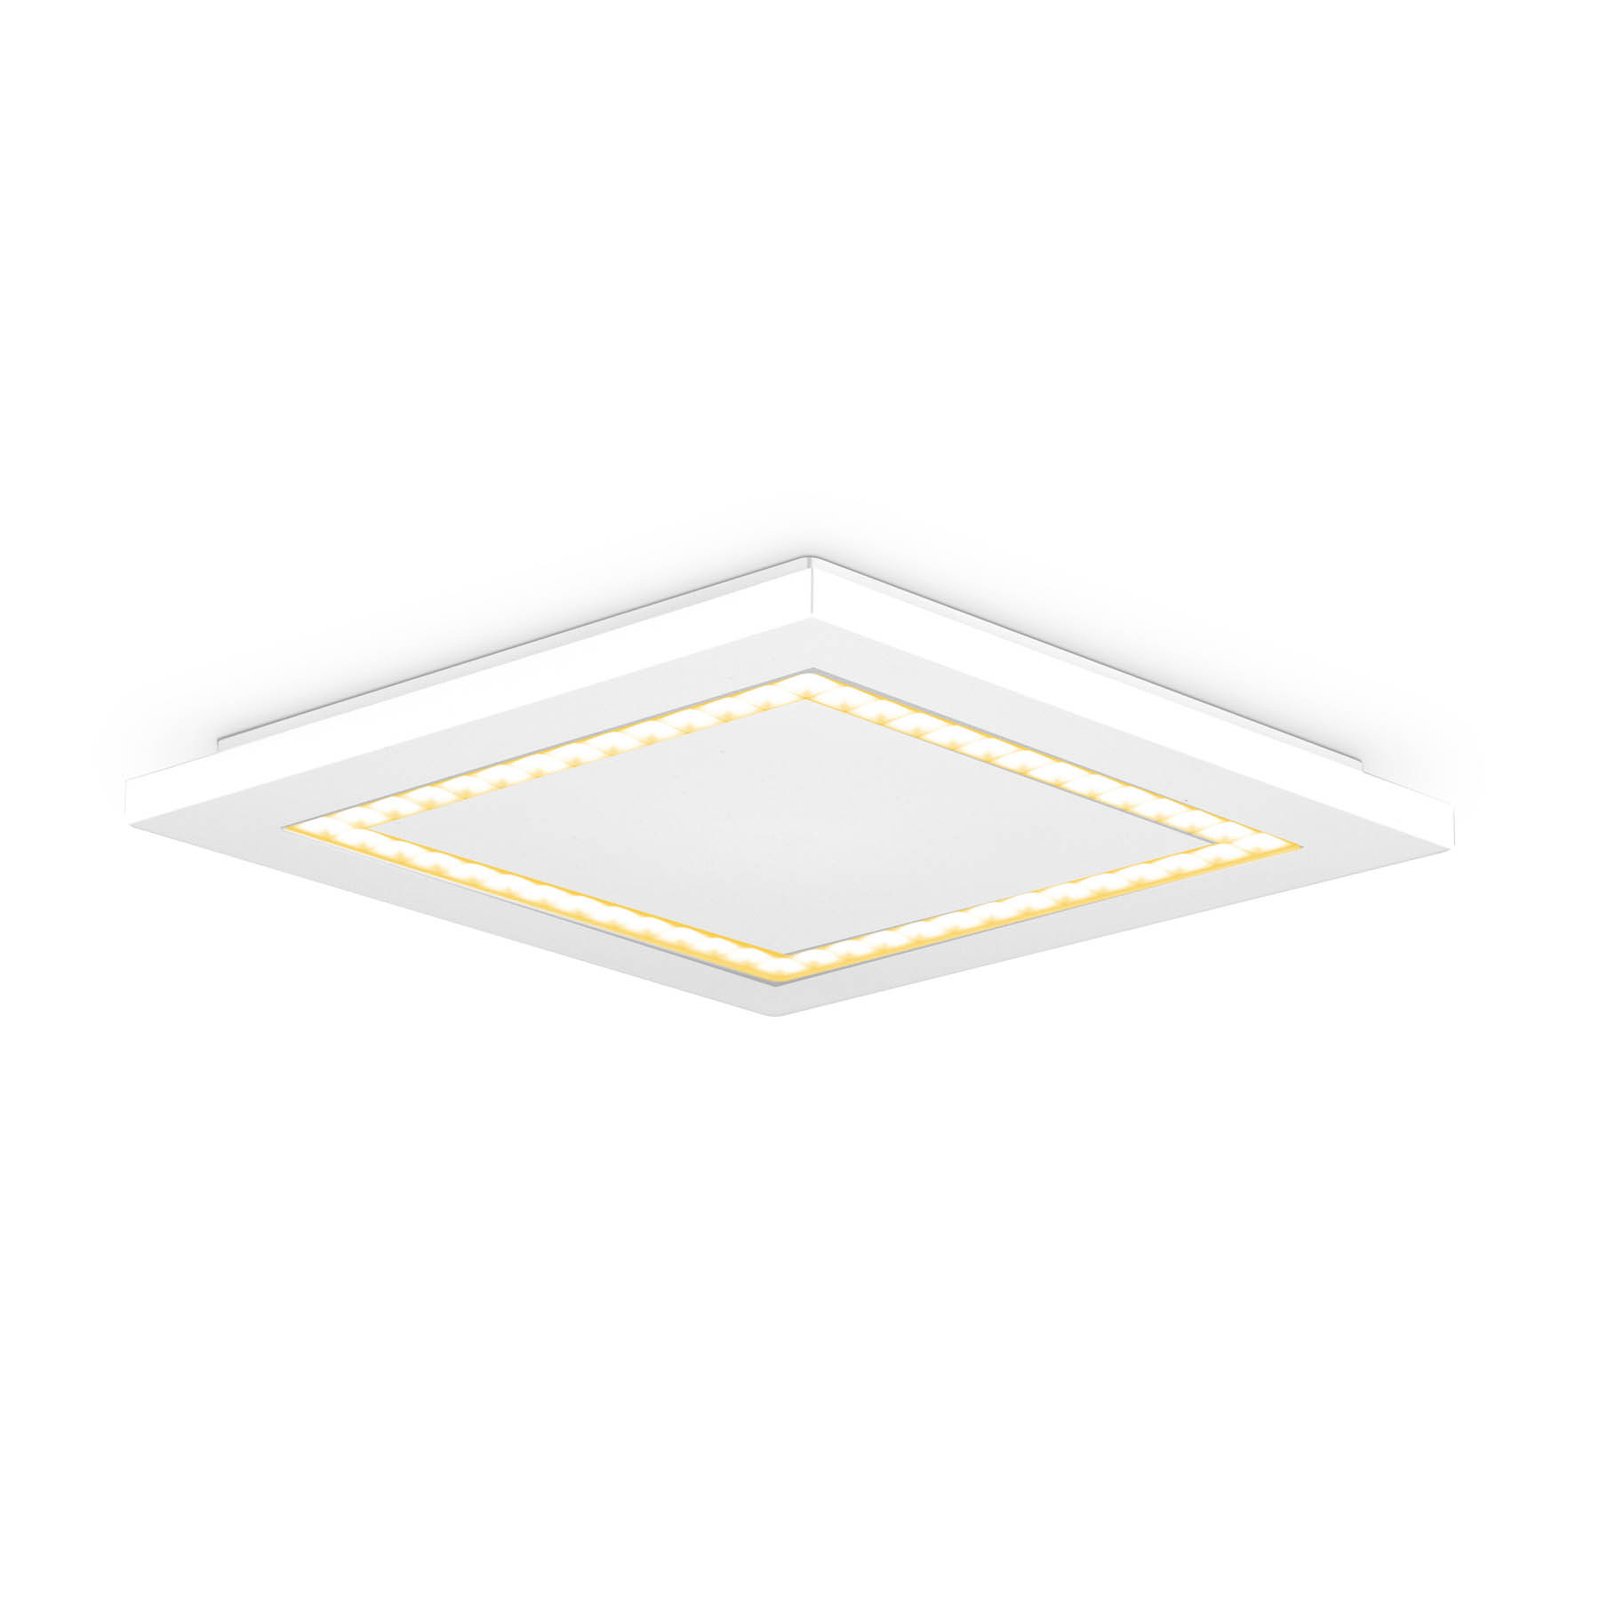 EVN ALQ pannello LED bianco 15W 30x30cm 3.000K